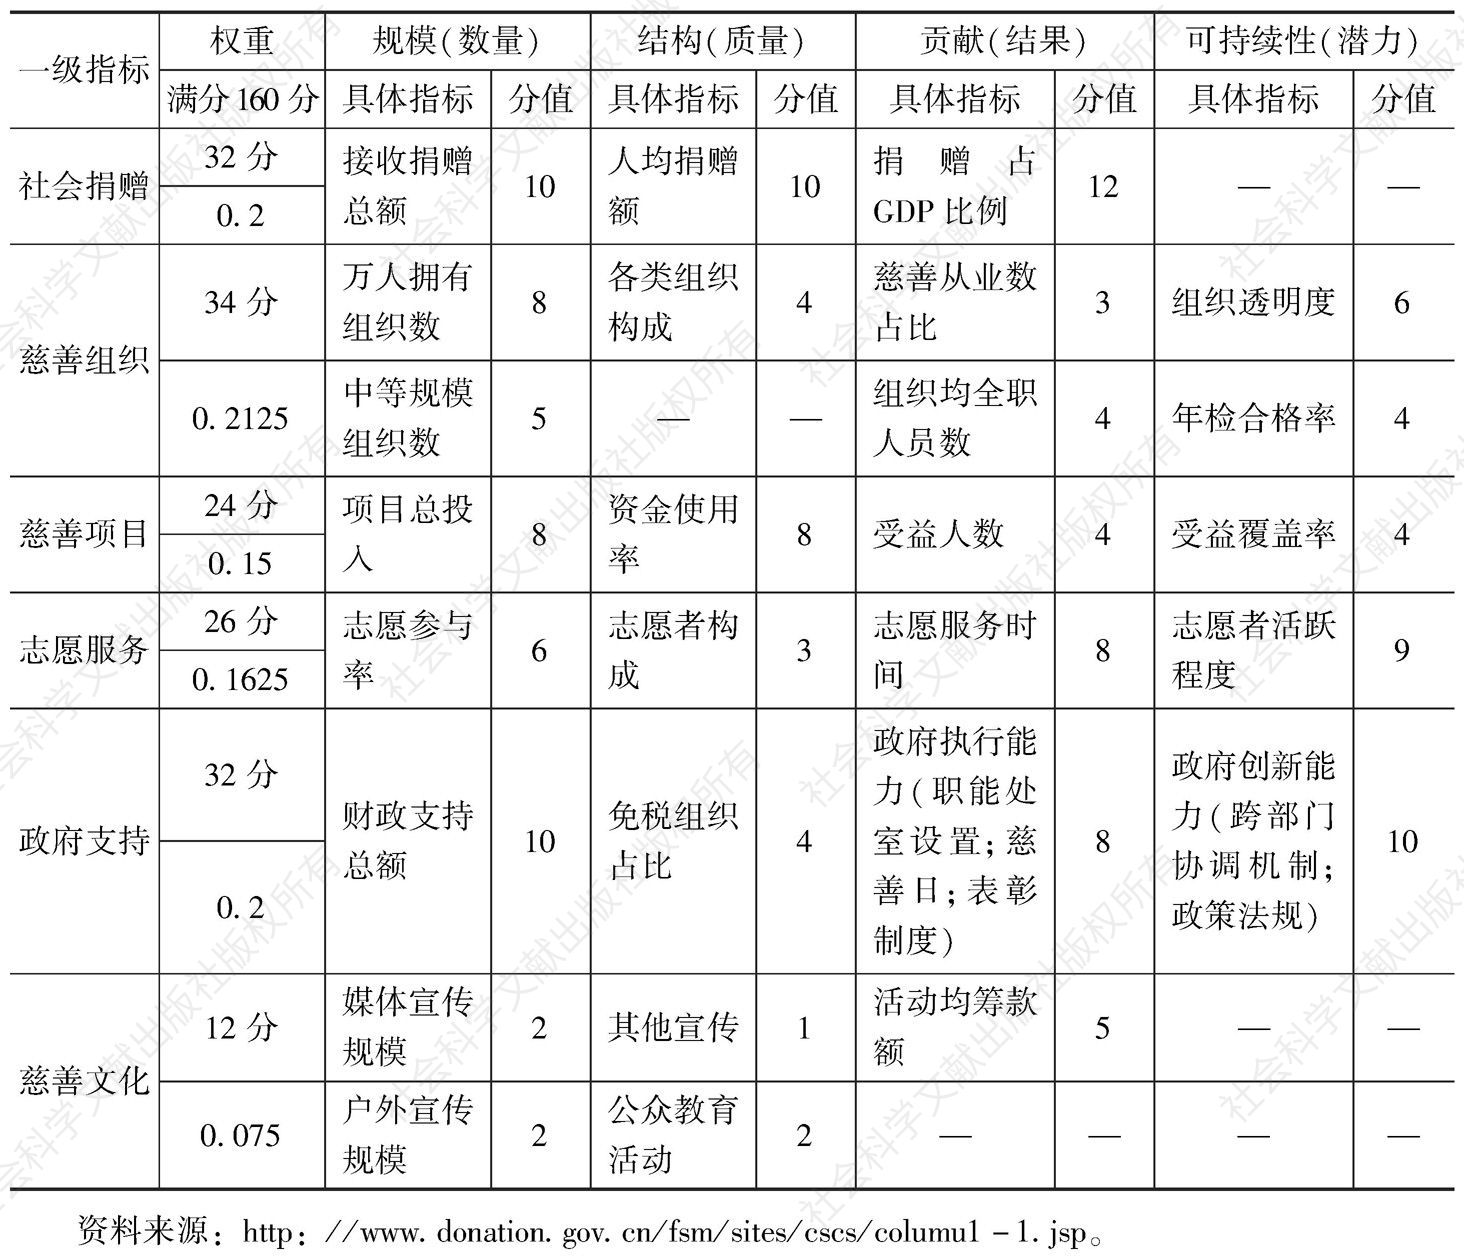 表1 首届中国城市公益慈善指数指标体系